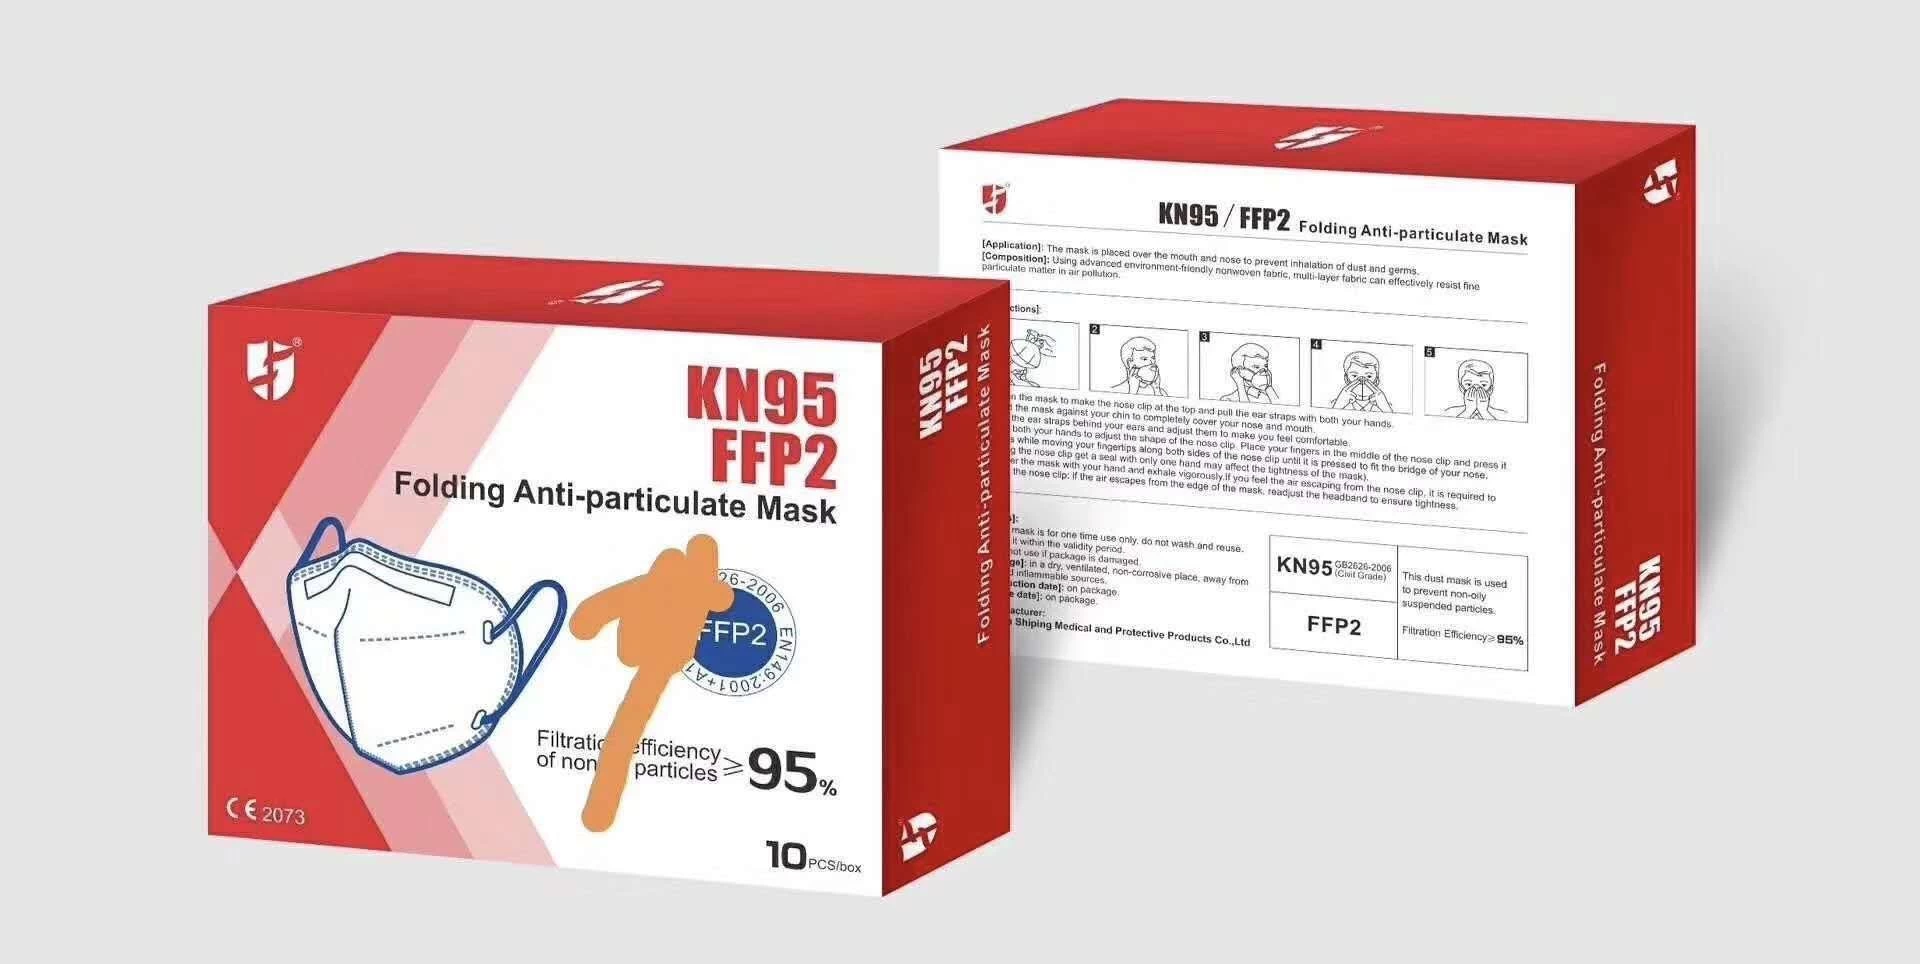 Masques anti-particules pliants kn95 n95 ffp2 ffp3 en stock pour coronavirus avec masque standard CE pour virus